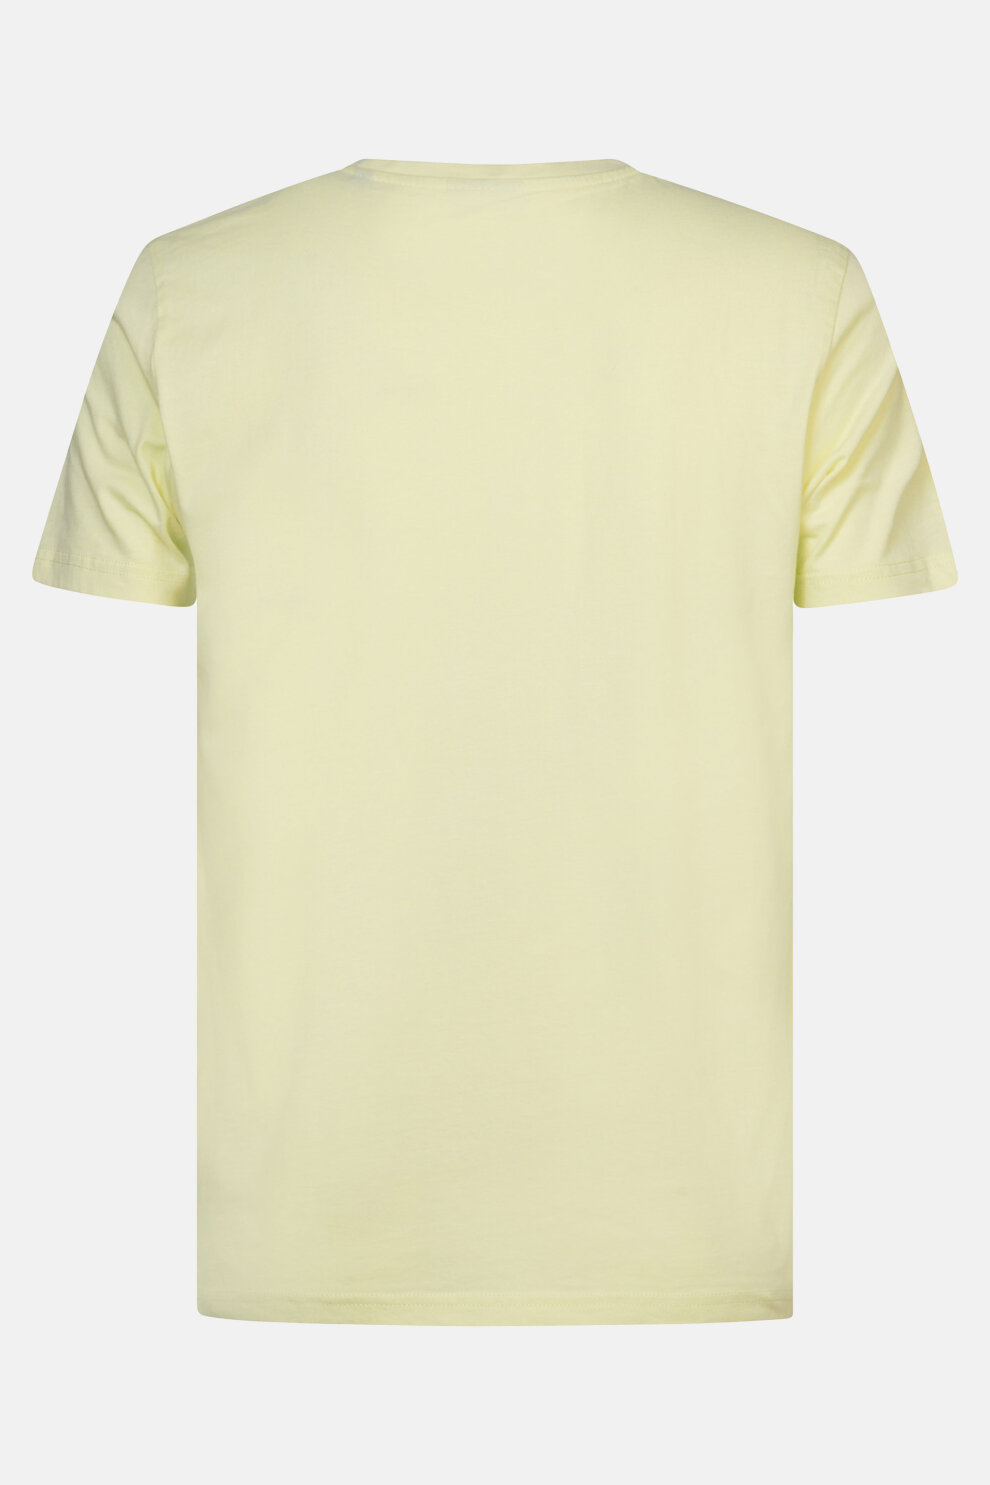 MUŠKARCI - Majice - Petrol majica - Kratki rukavi - Žuta